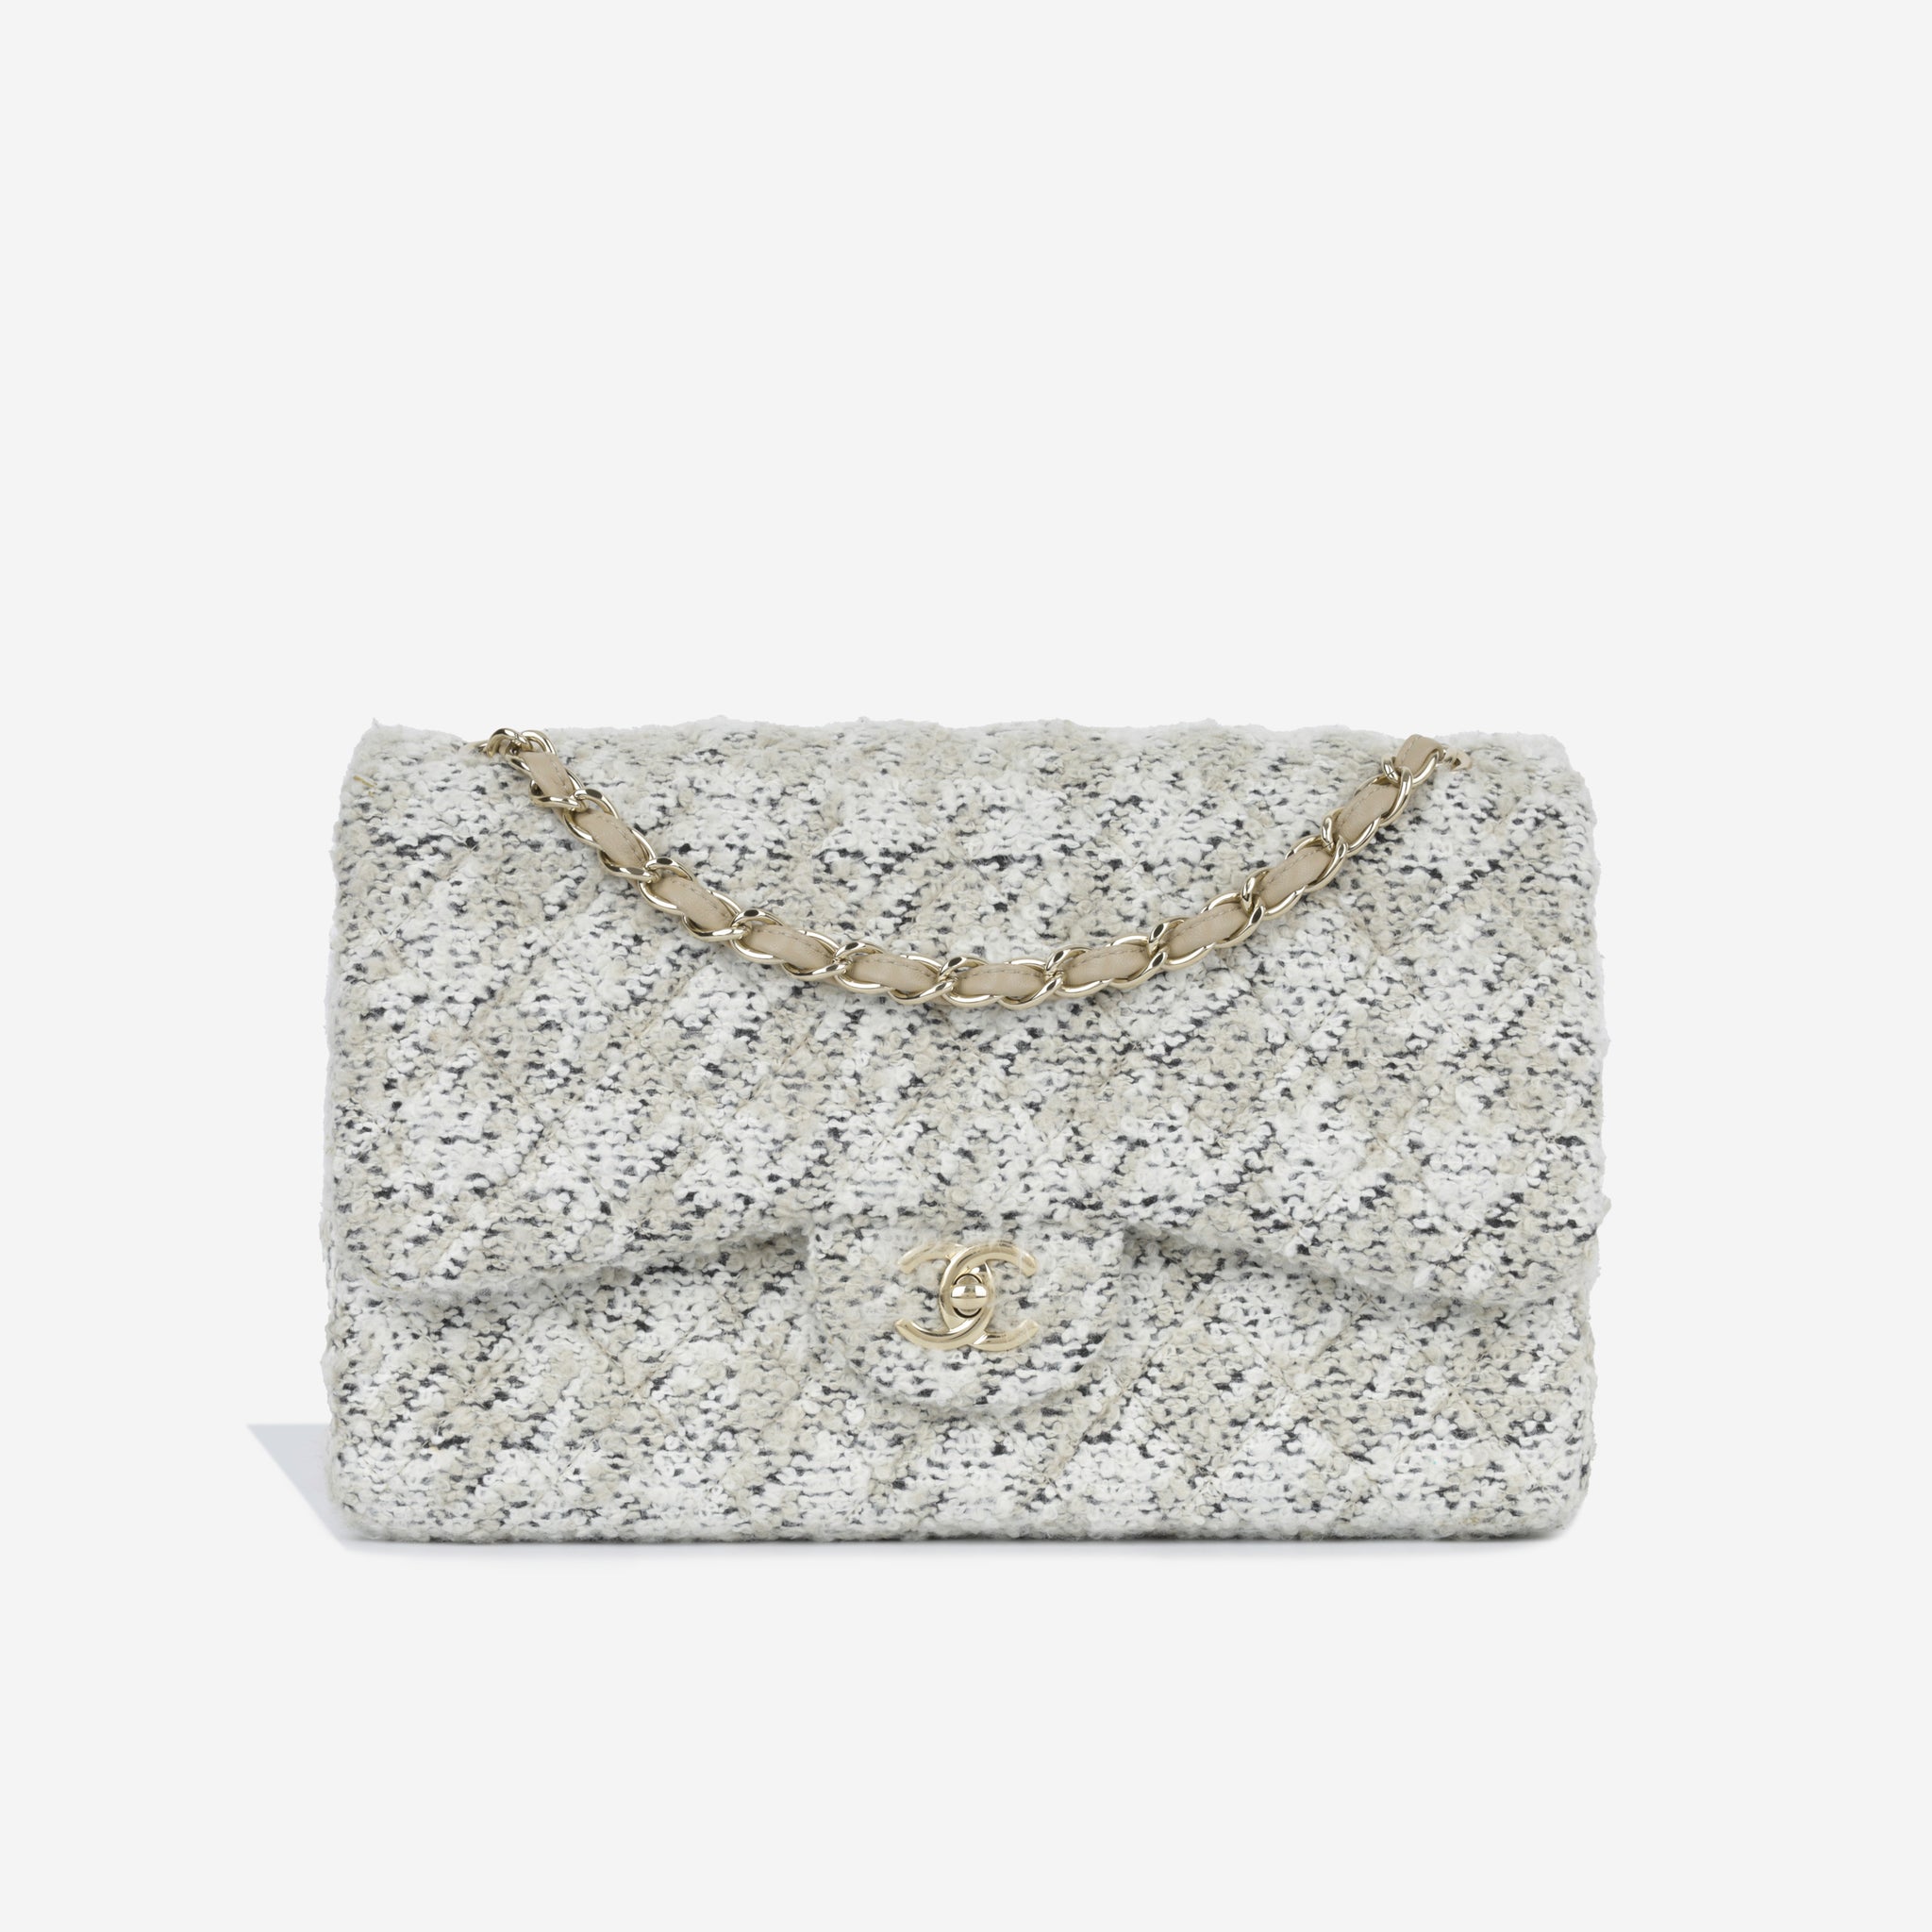 Chanel - Classic Flap Bag - Jumbo - Cotton-Wool Tweed - CGHW - 2017